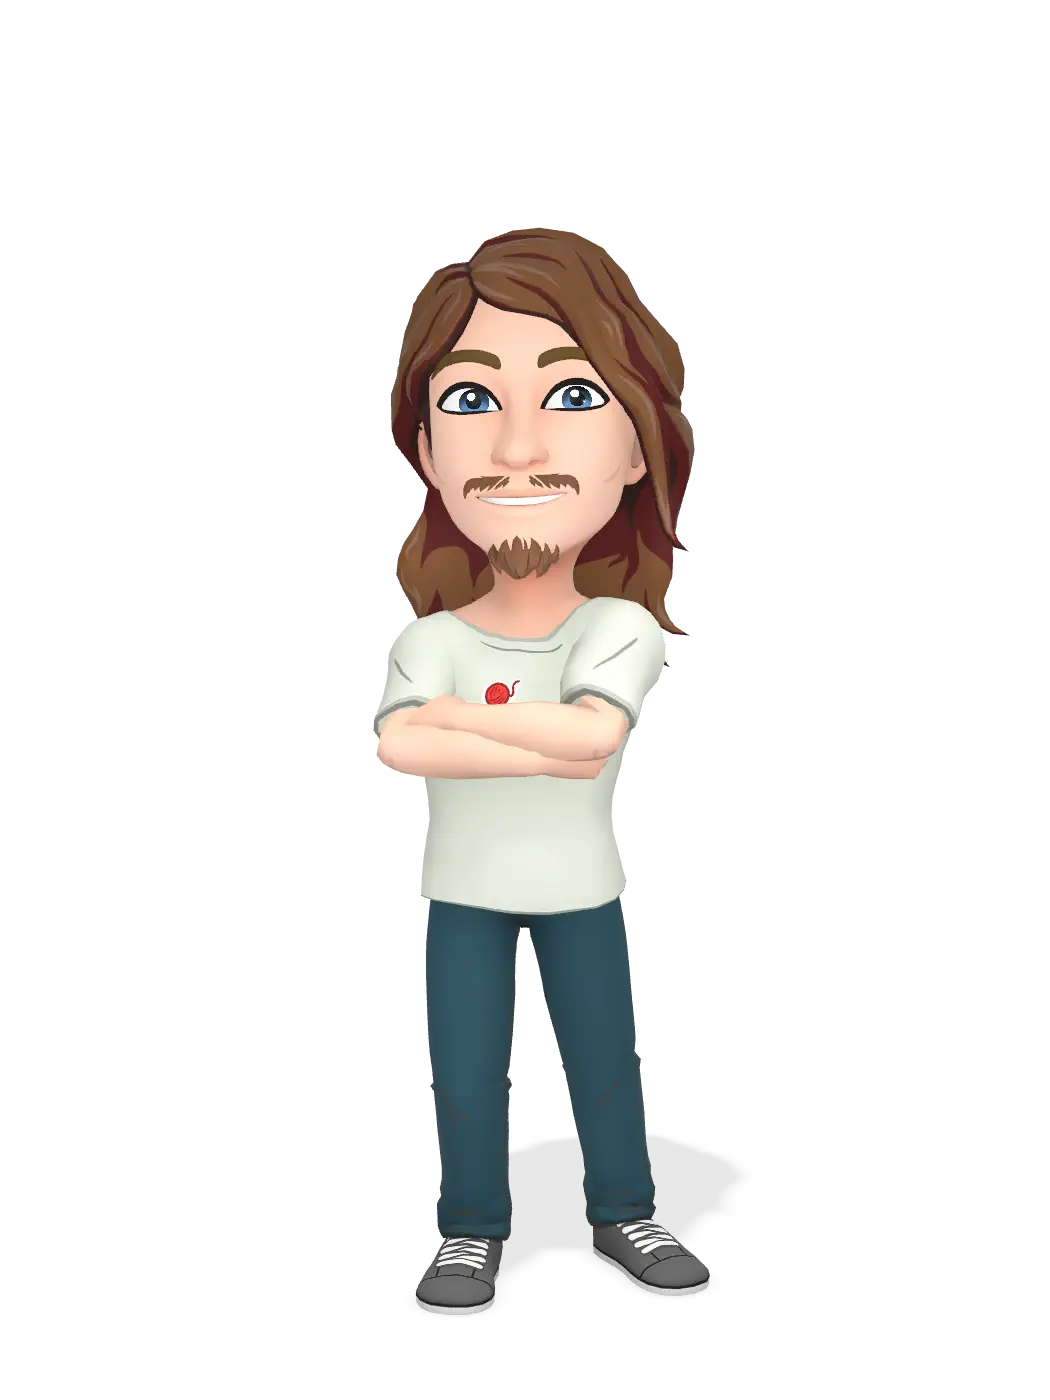 3D Bitmoji for wienerdogman avatar